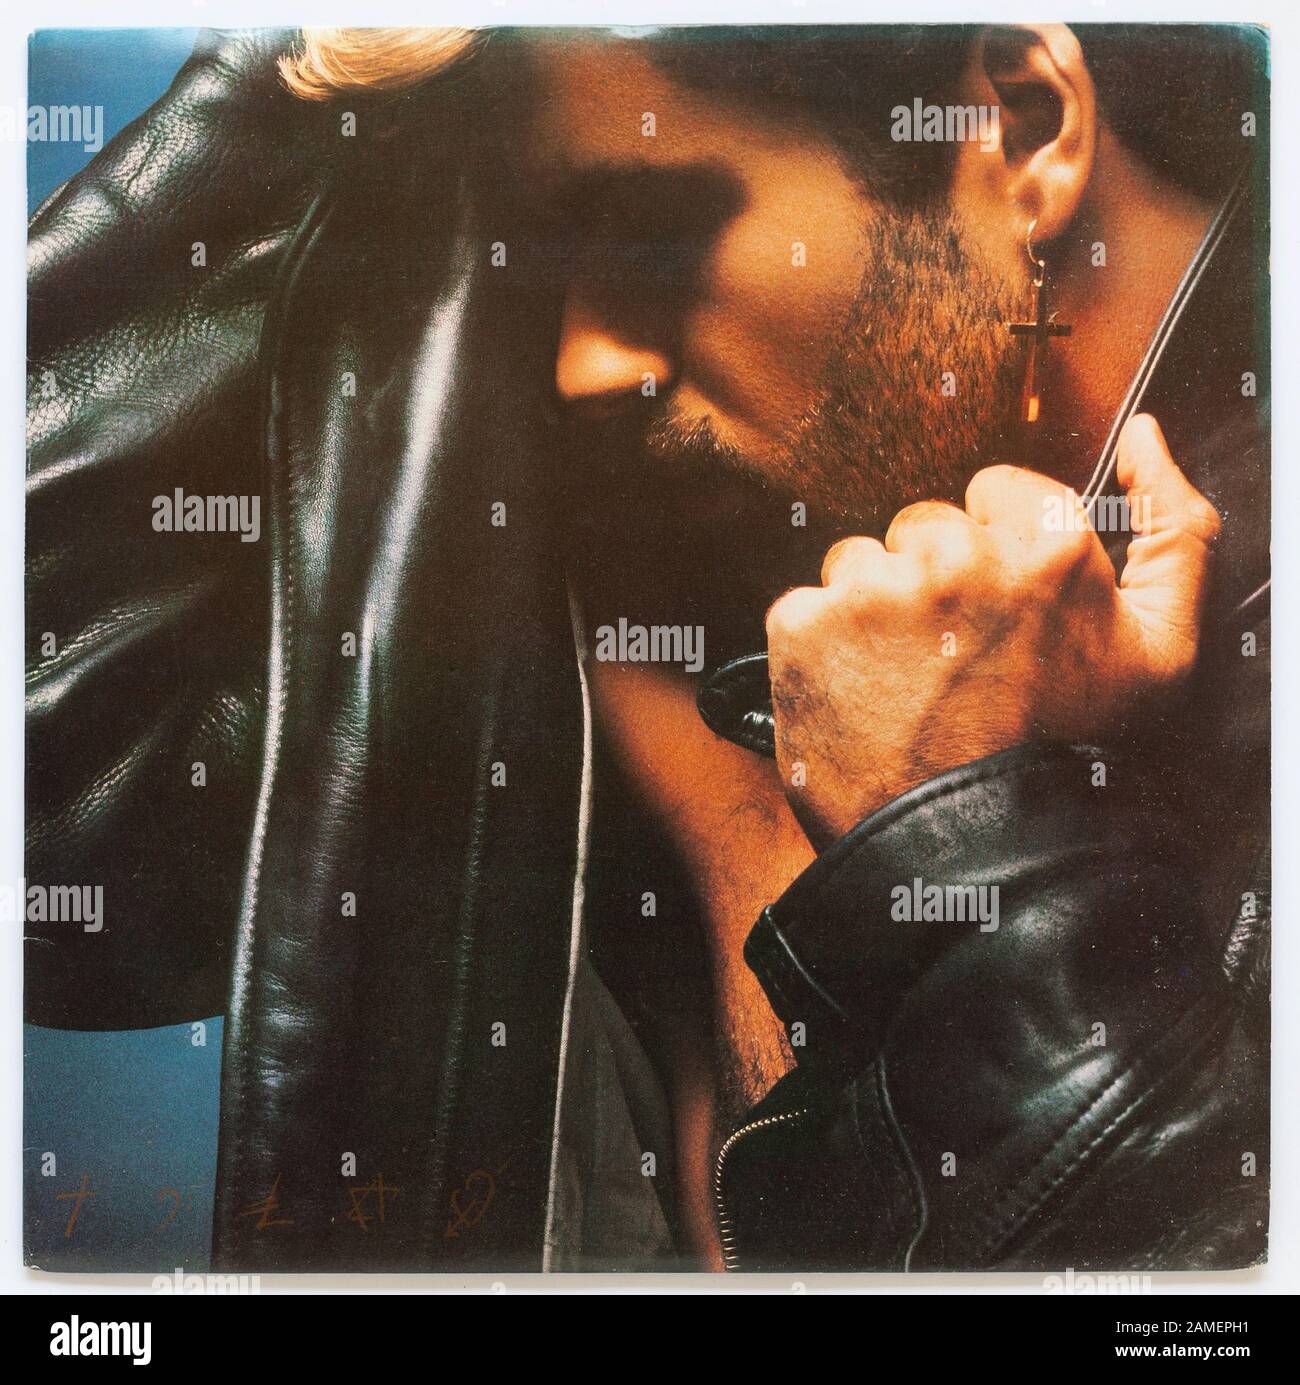 Das Cover von Faith, 1987 Album von George Michael auf Colombia Epic - nur für redaktionelle Verwendung Stockfoto